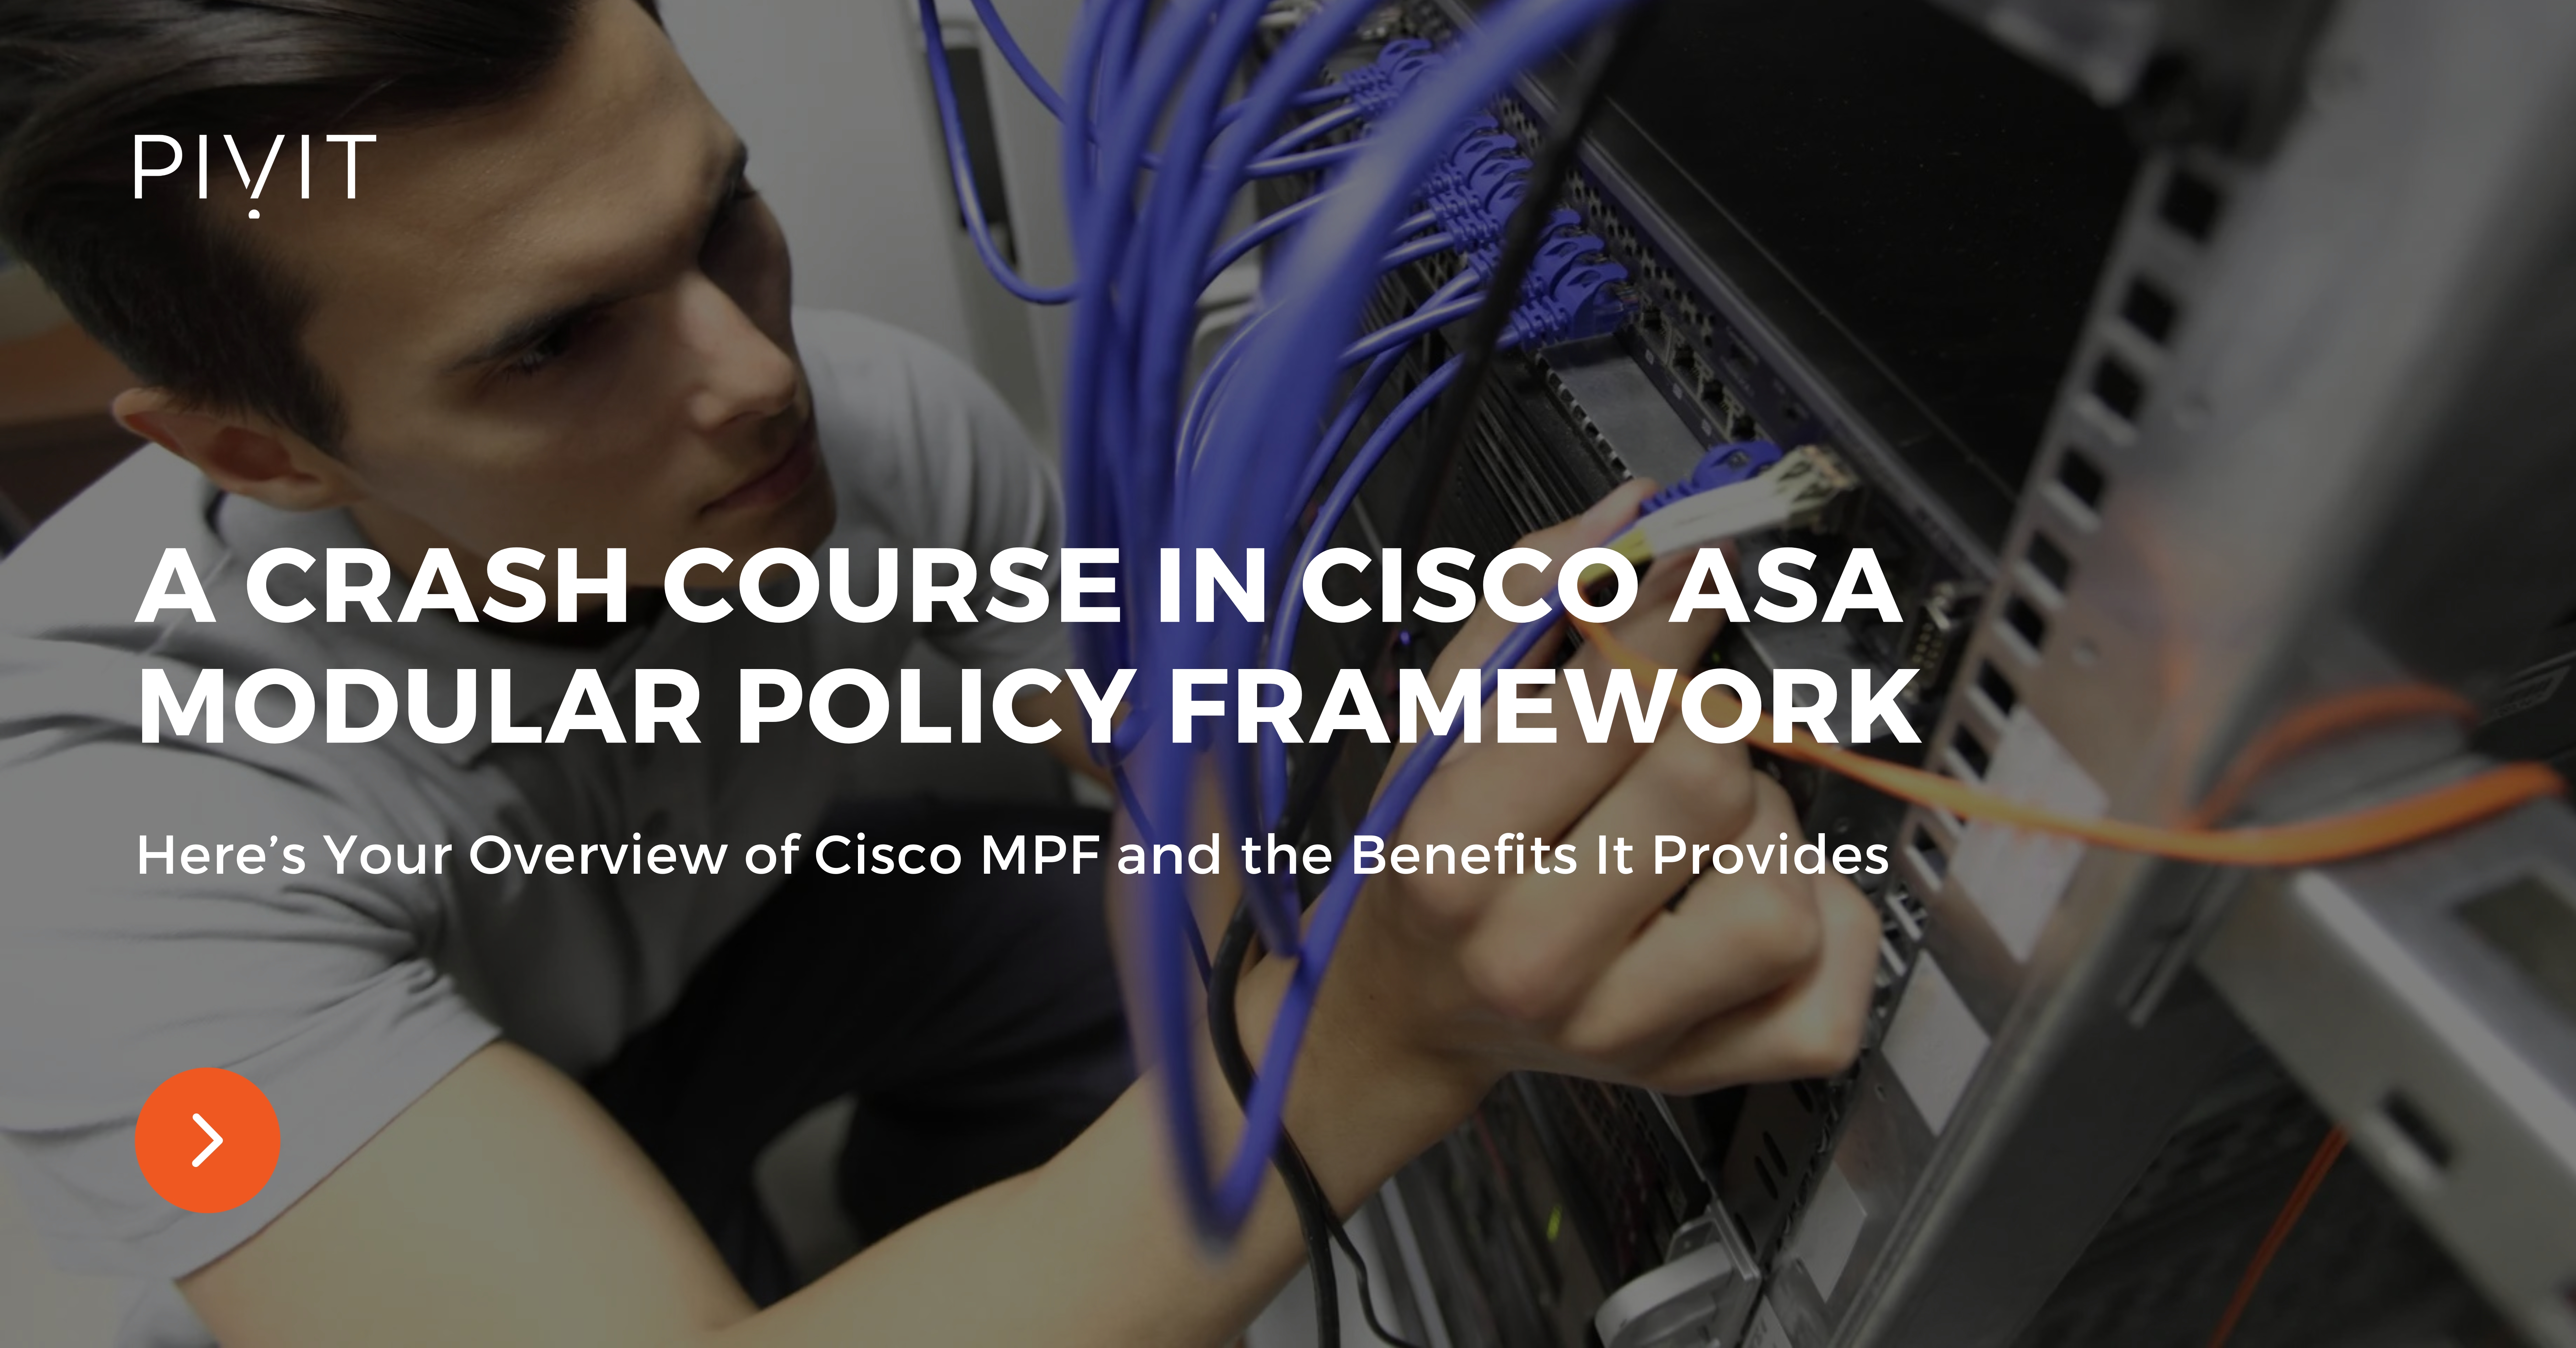 A Crash Course in Cisco ASA Modular Policy Framework